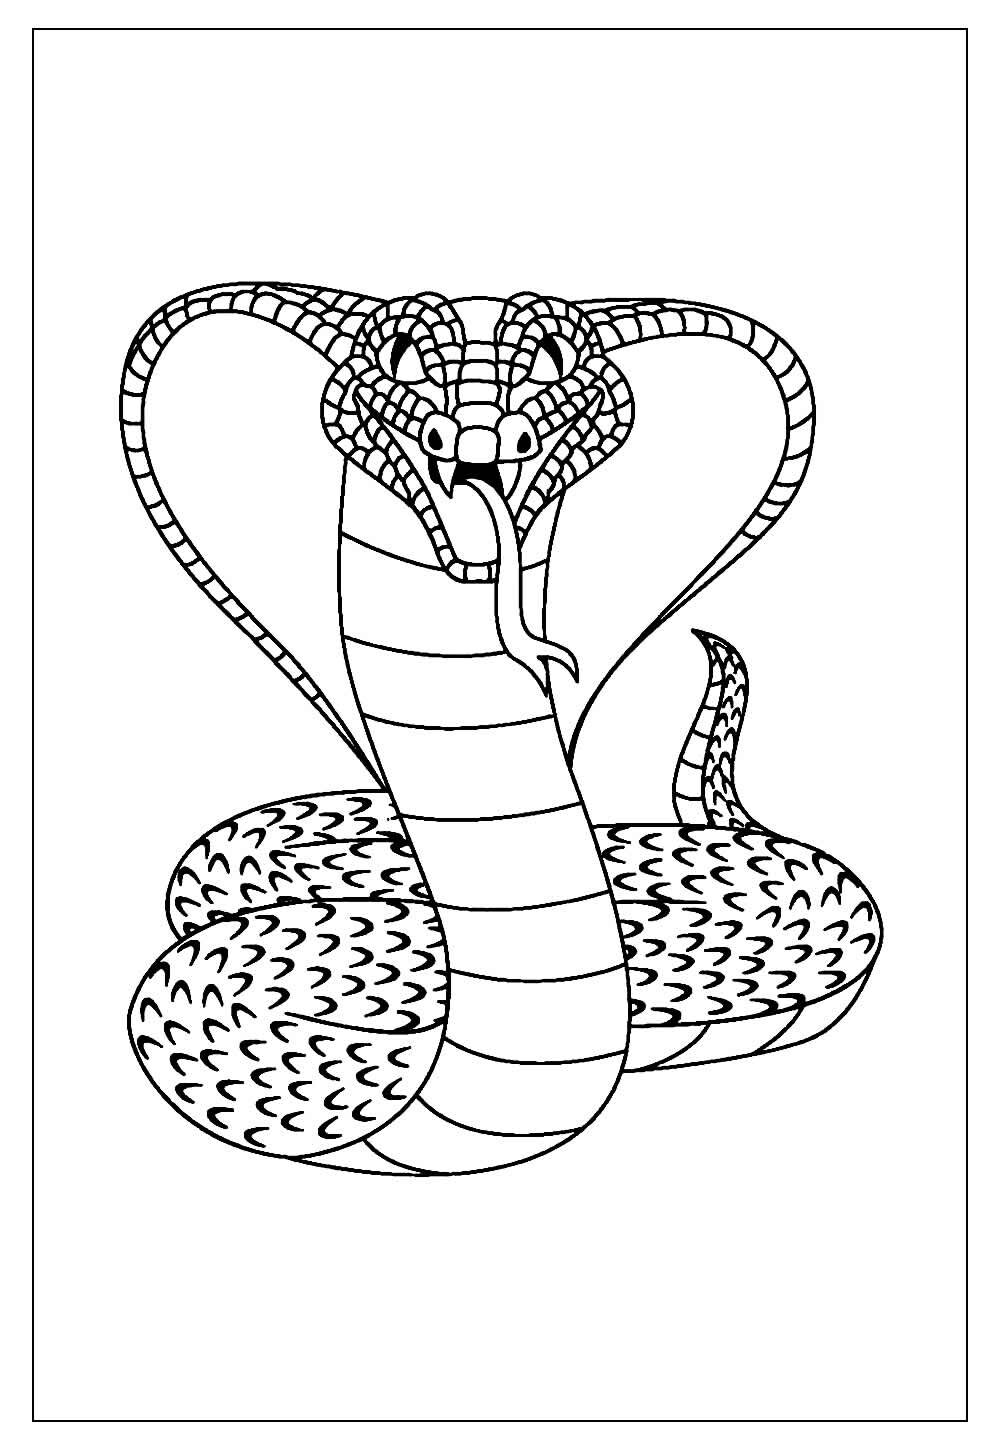 Desenho de Cobra para colorir – Imagem e Molde e para imprimir